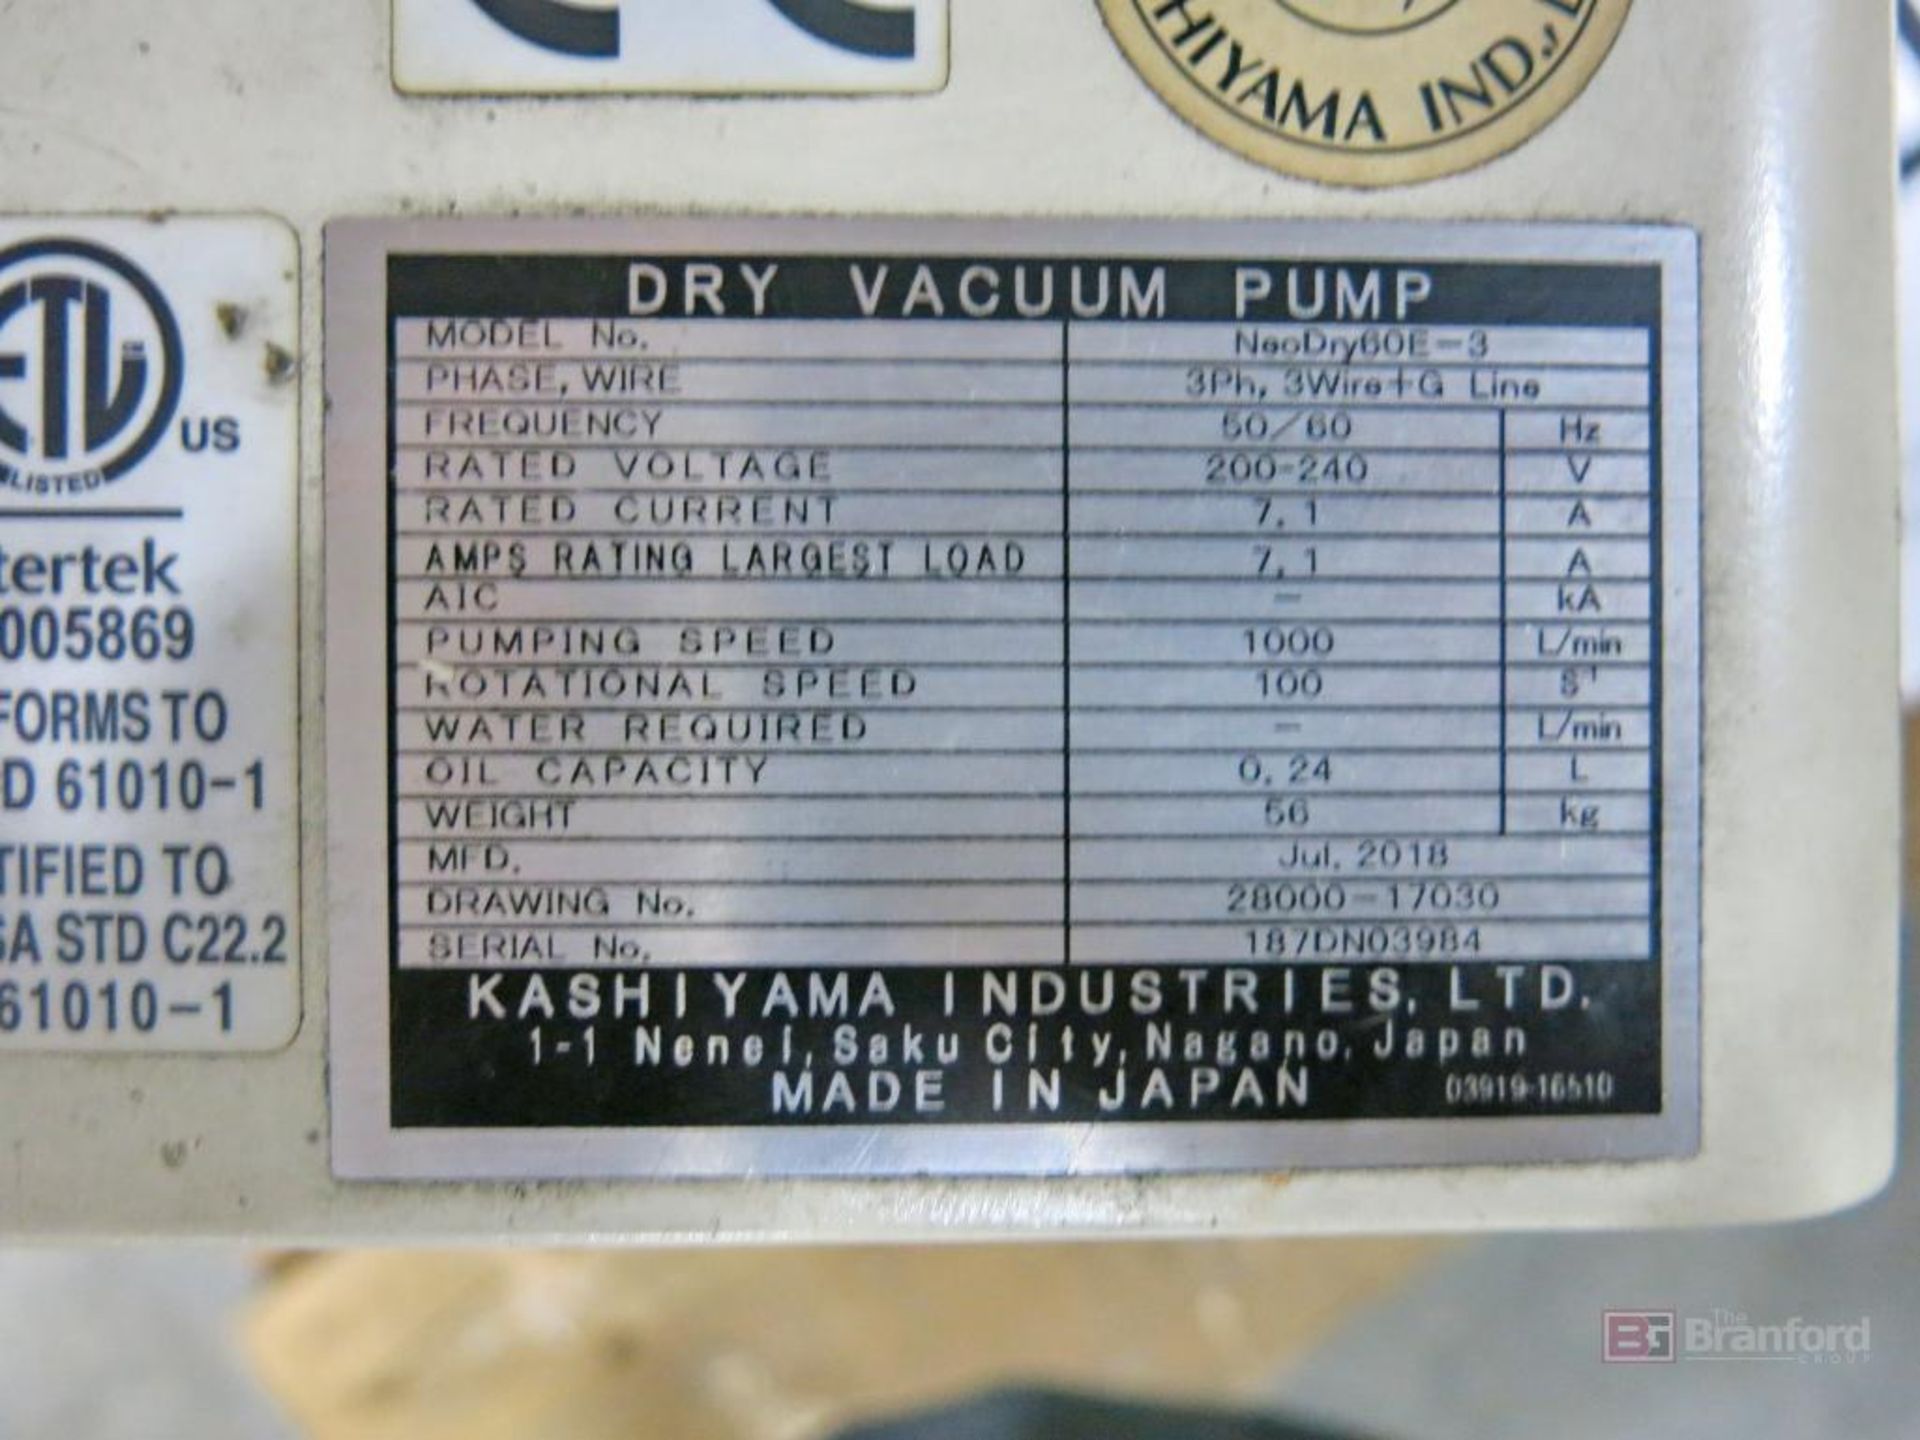 Kashiyama Neodry 36E Dry Vacuum Pump - Image 2 of 3